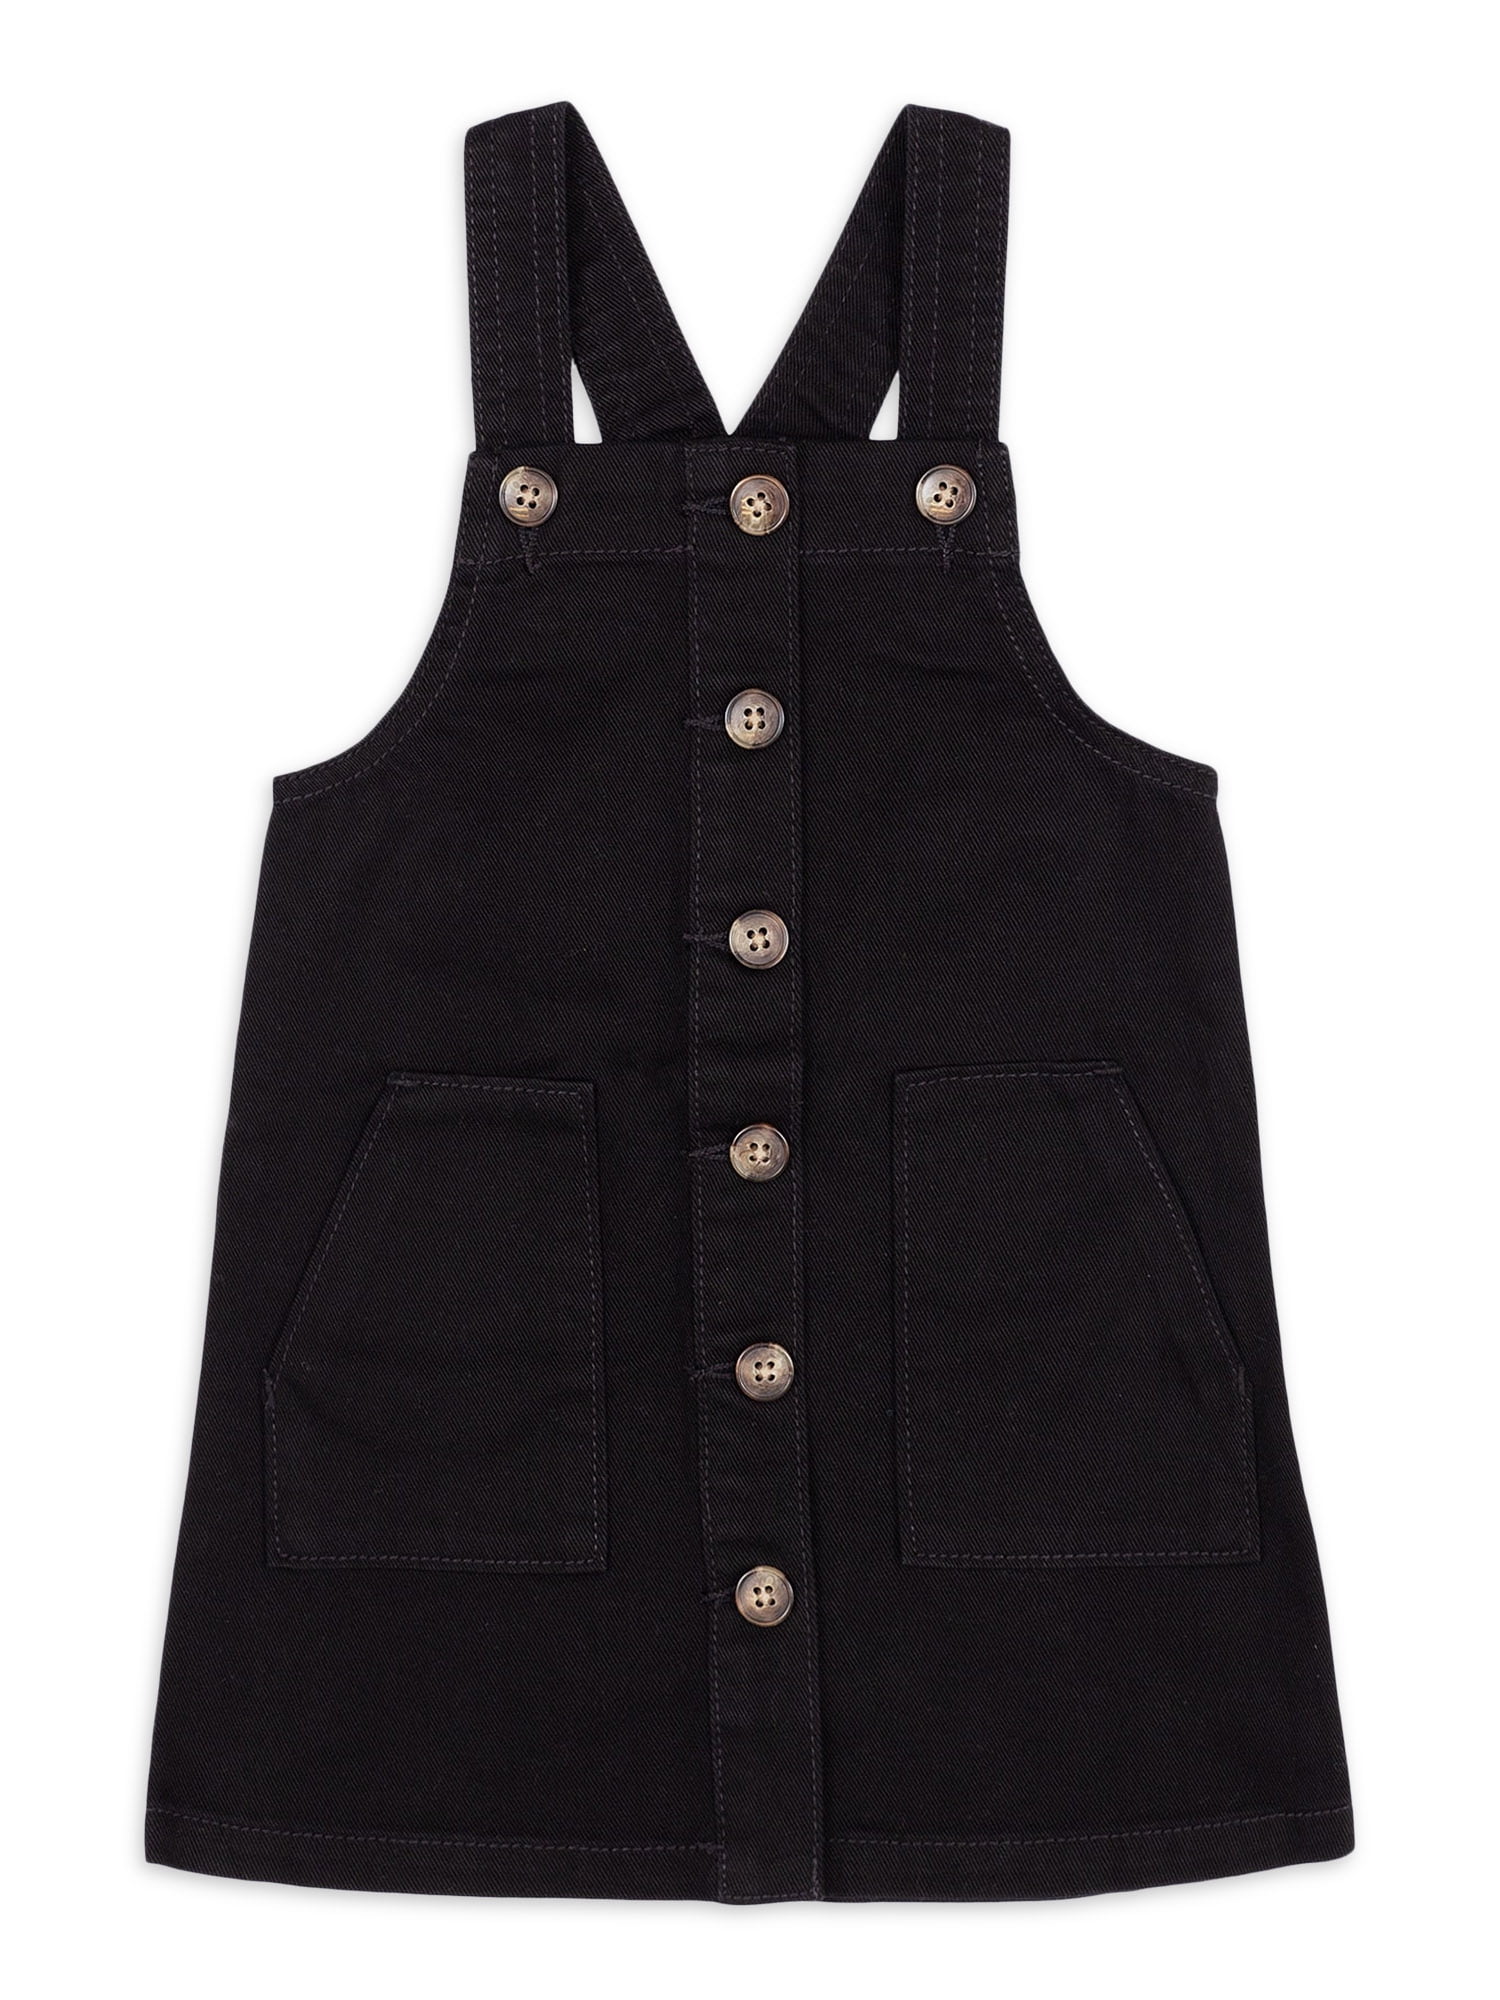 Black Jumper Dress Toddler